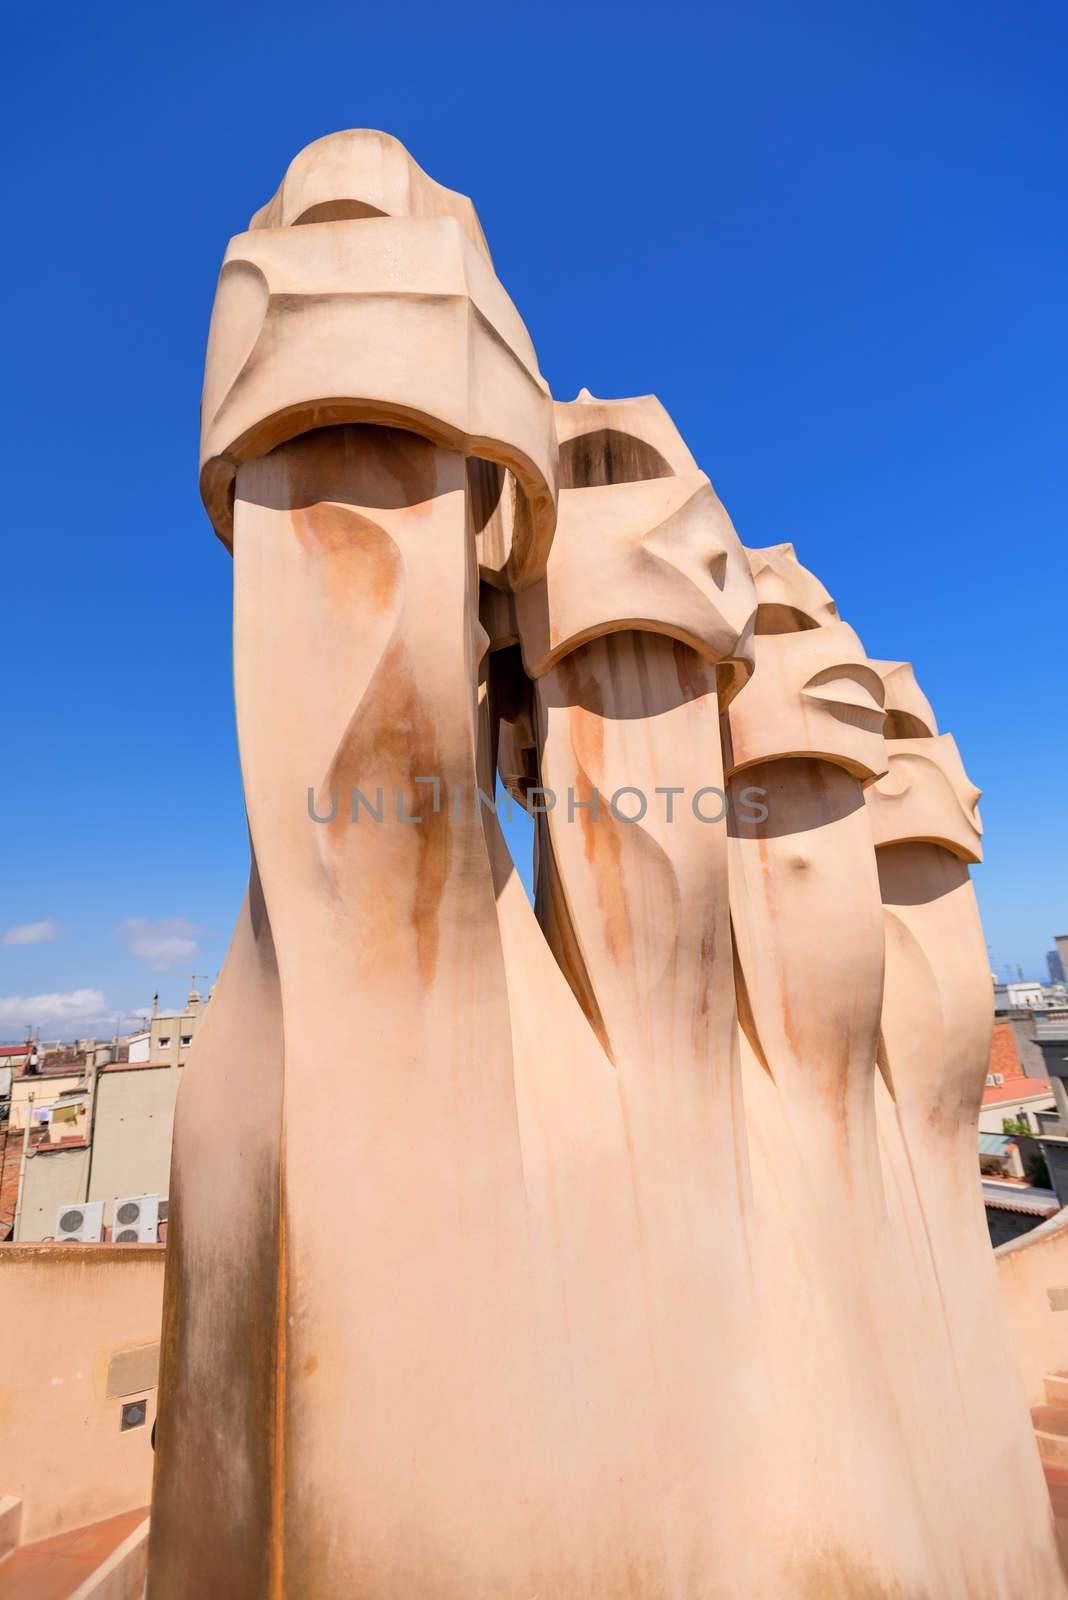 Gaudi Chimneys statues at Casa Mila by Nanisimova